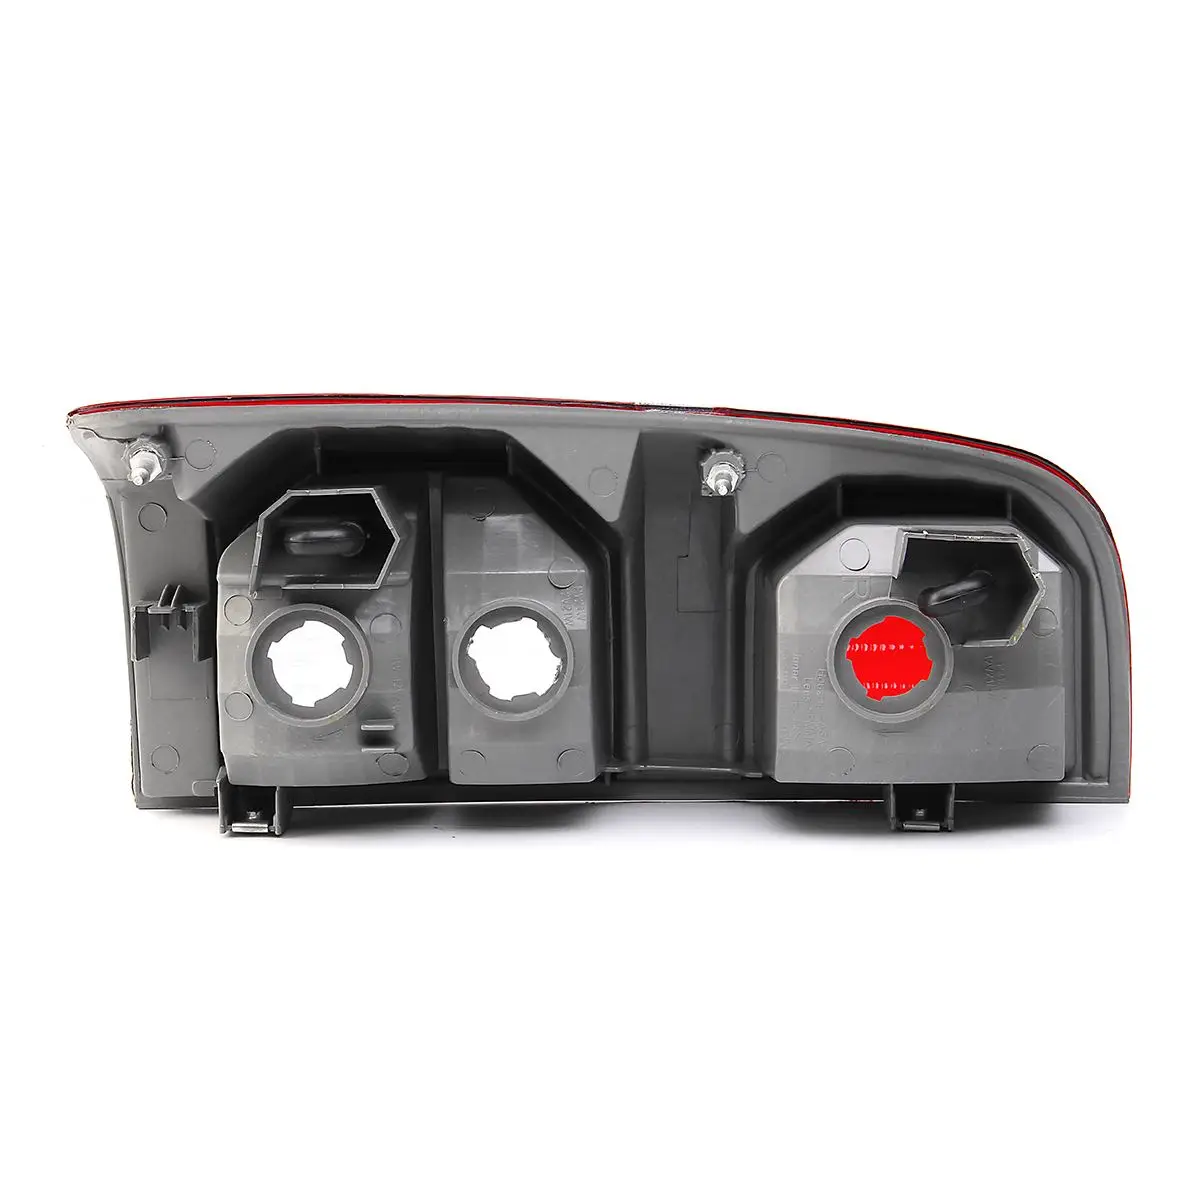 1 шт. 2 шт. хвост задний фонарь тормоза Предупреждение лампы без красный задний светильник фонарь стоп-сигнала для Toyota Hilux 2005- стайлинга автомобилей